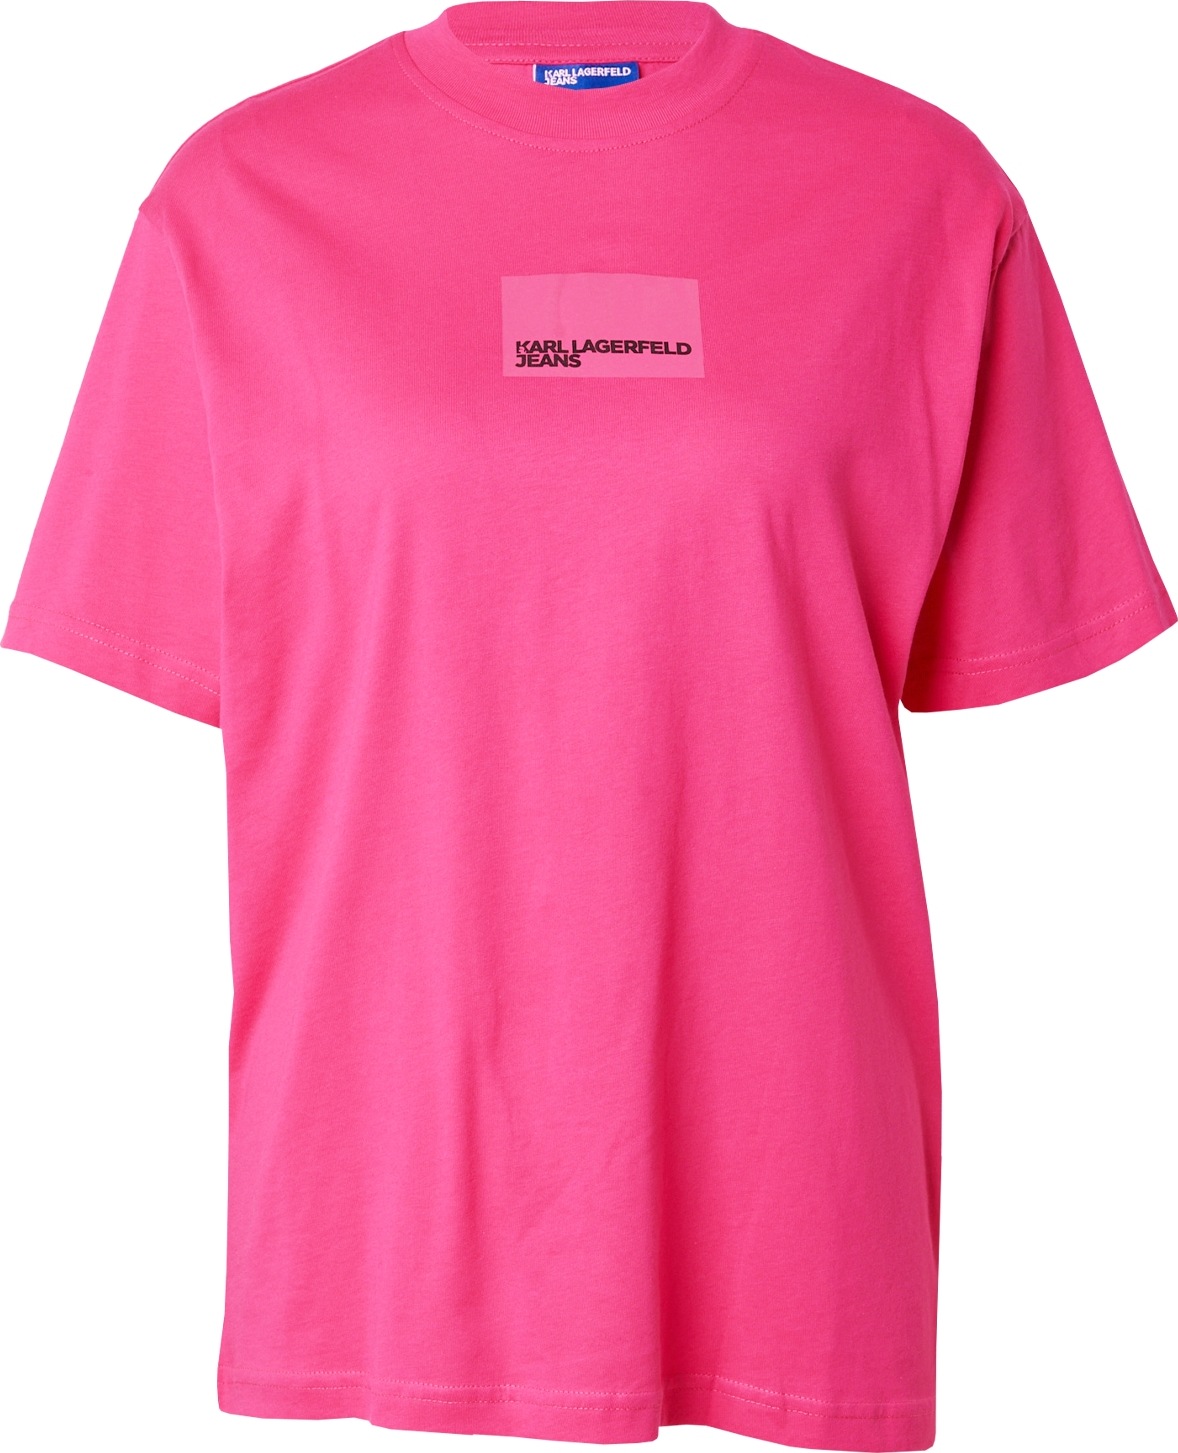 Tričko KARL LAGERFELD JEANS pink / růžová / černá